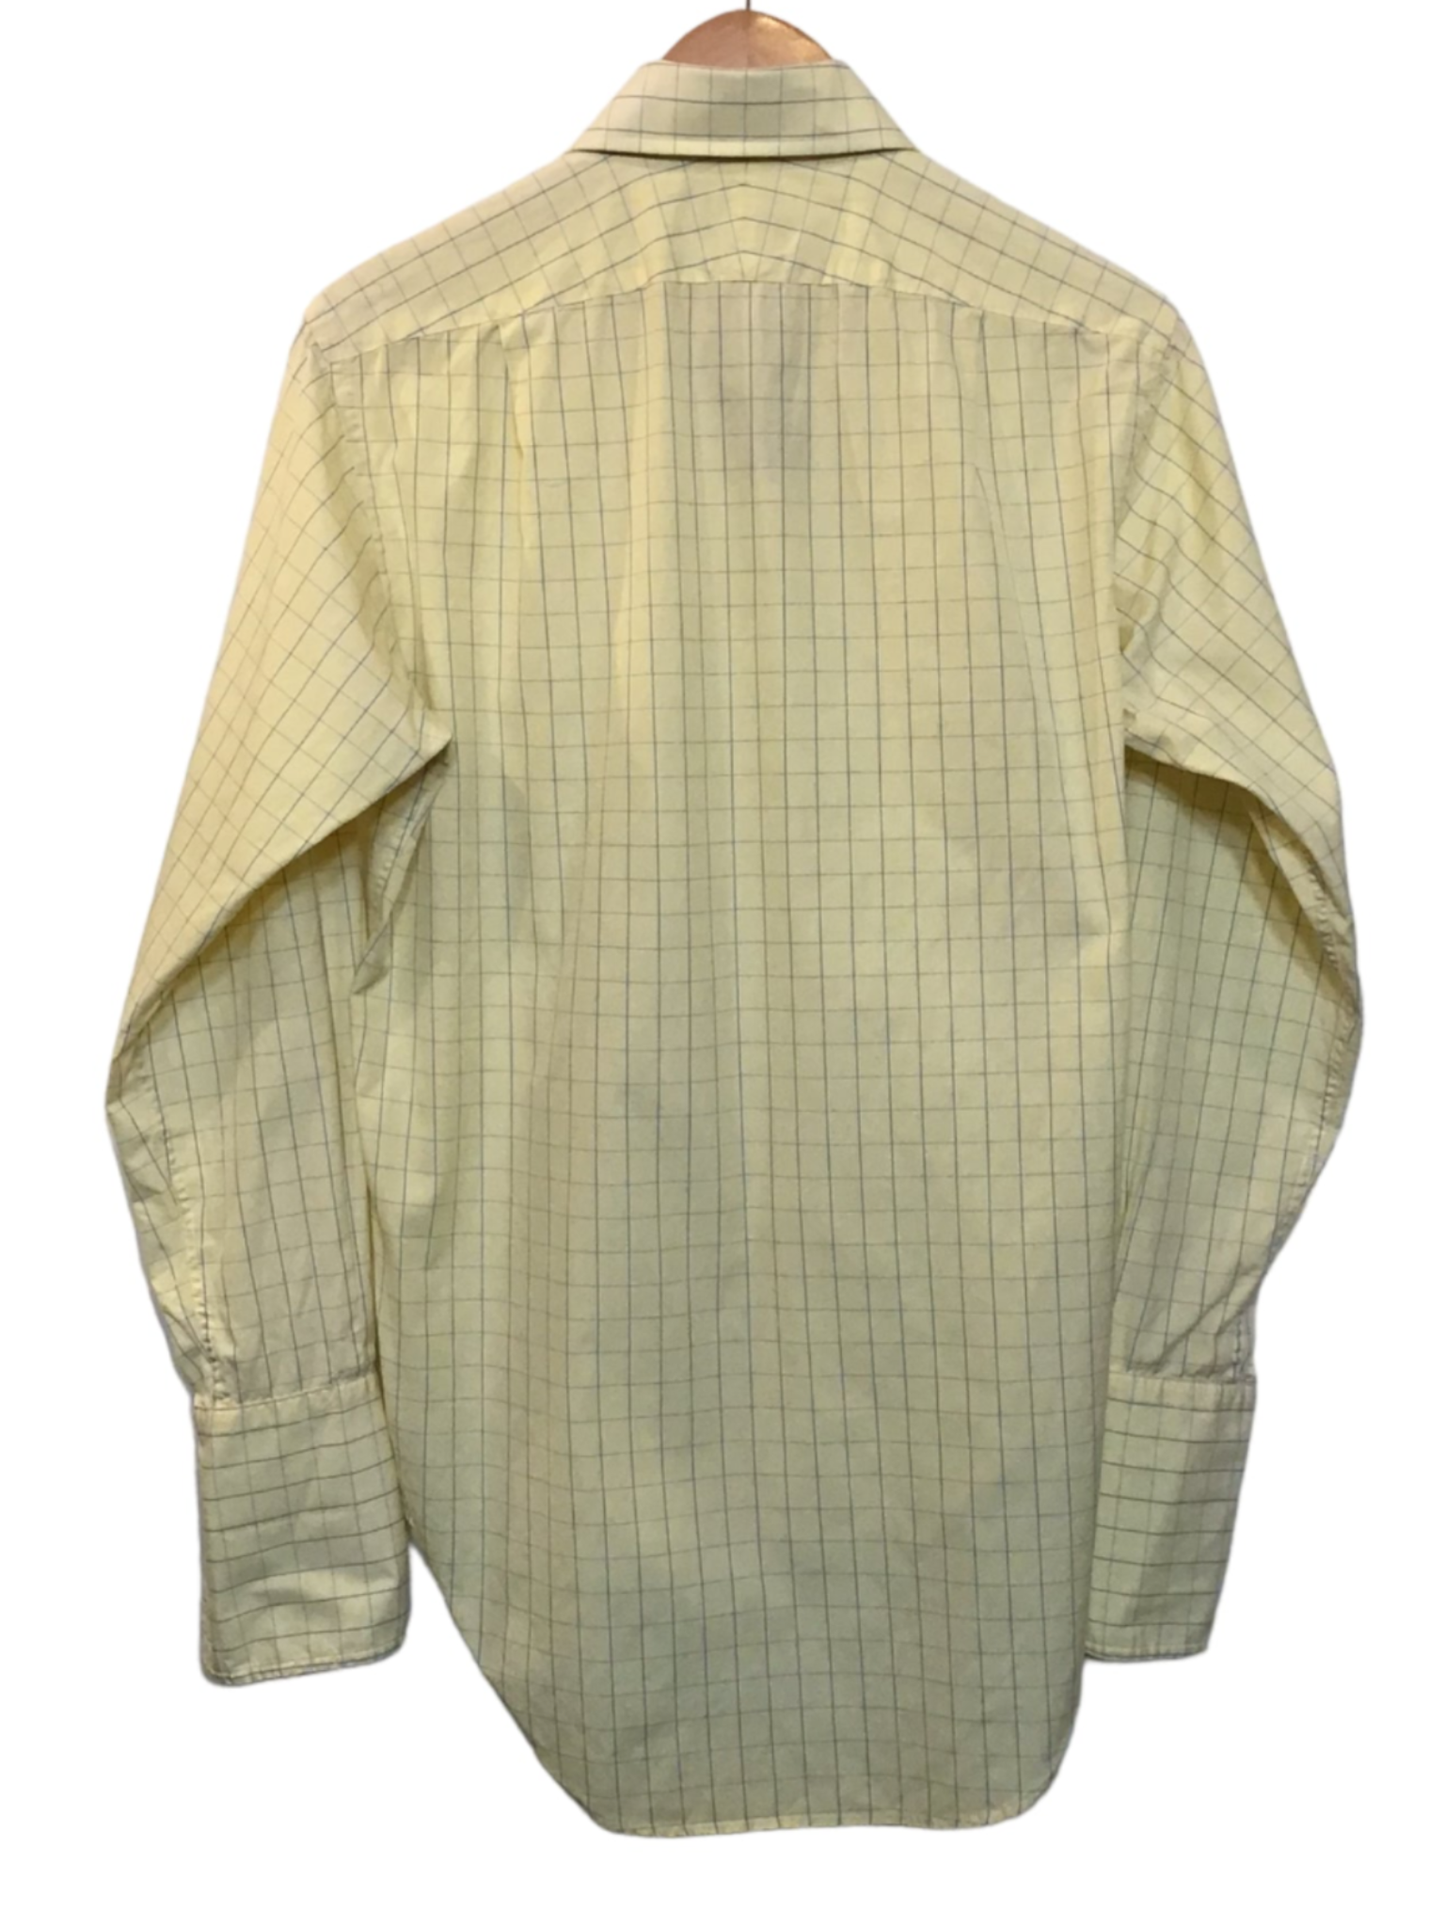 T.M. Lewin Shirt (Size L)